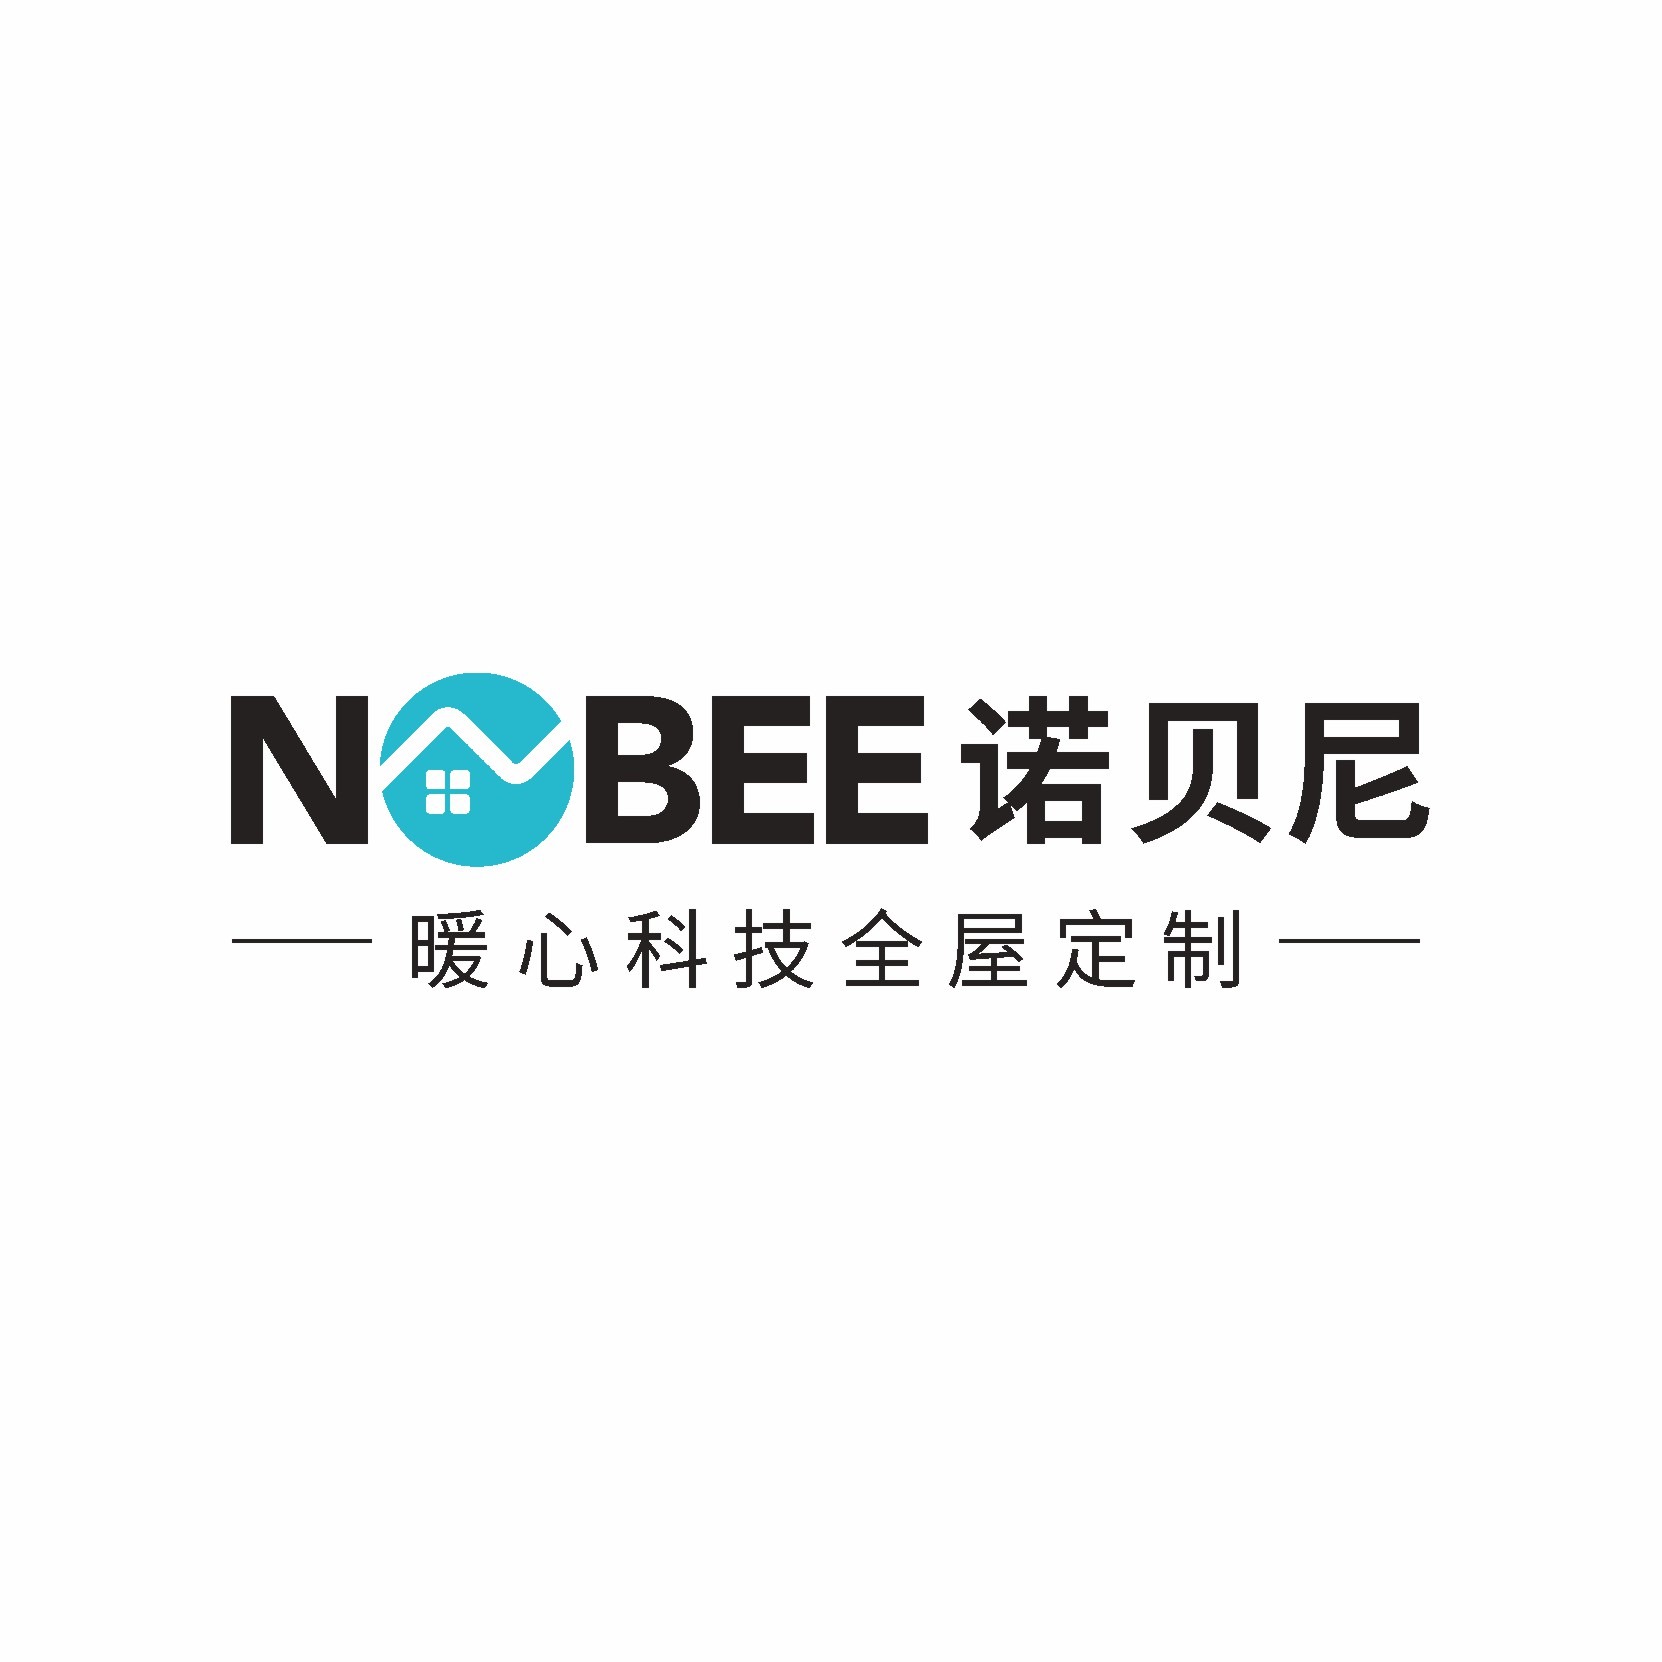 广州诺贝尼家居有限公司